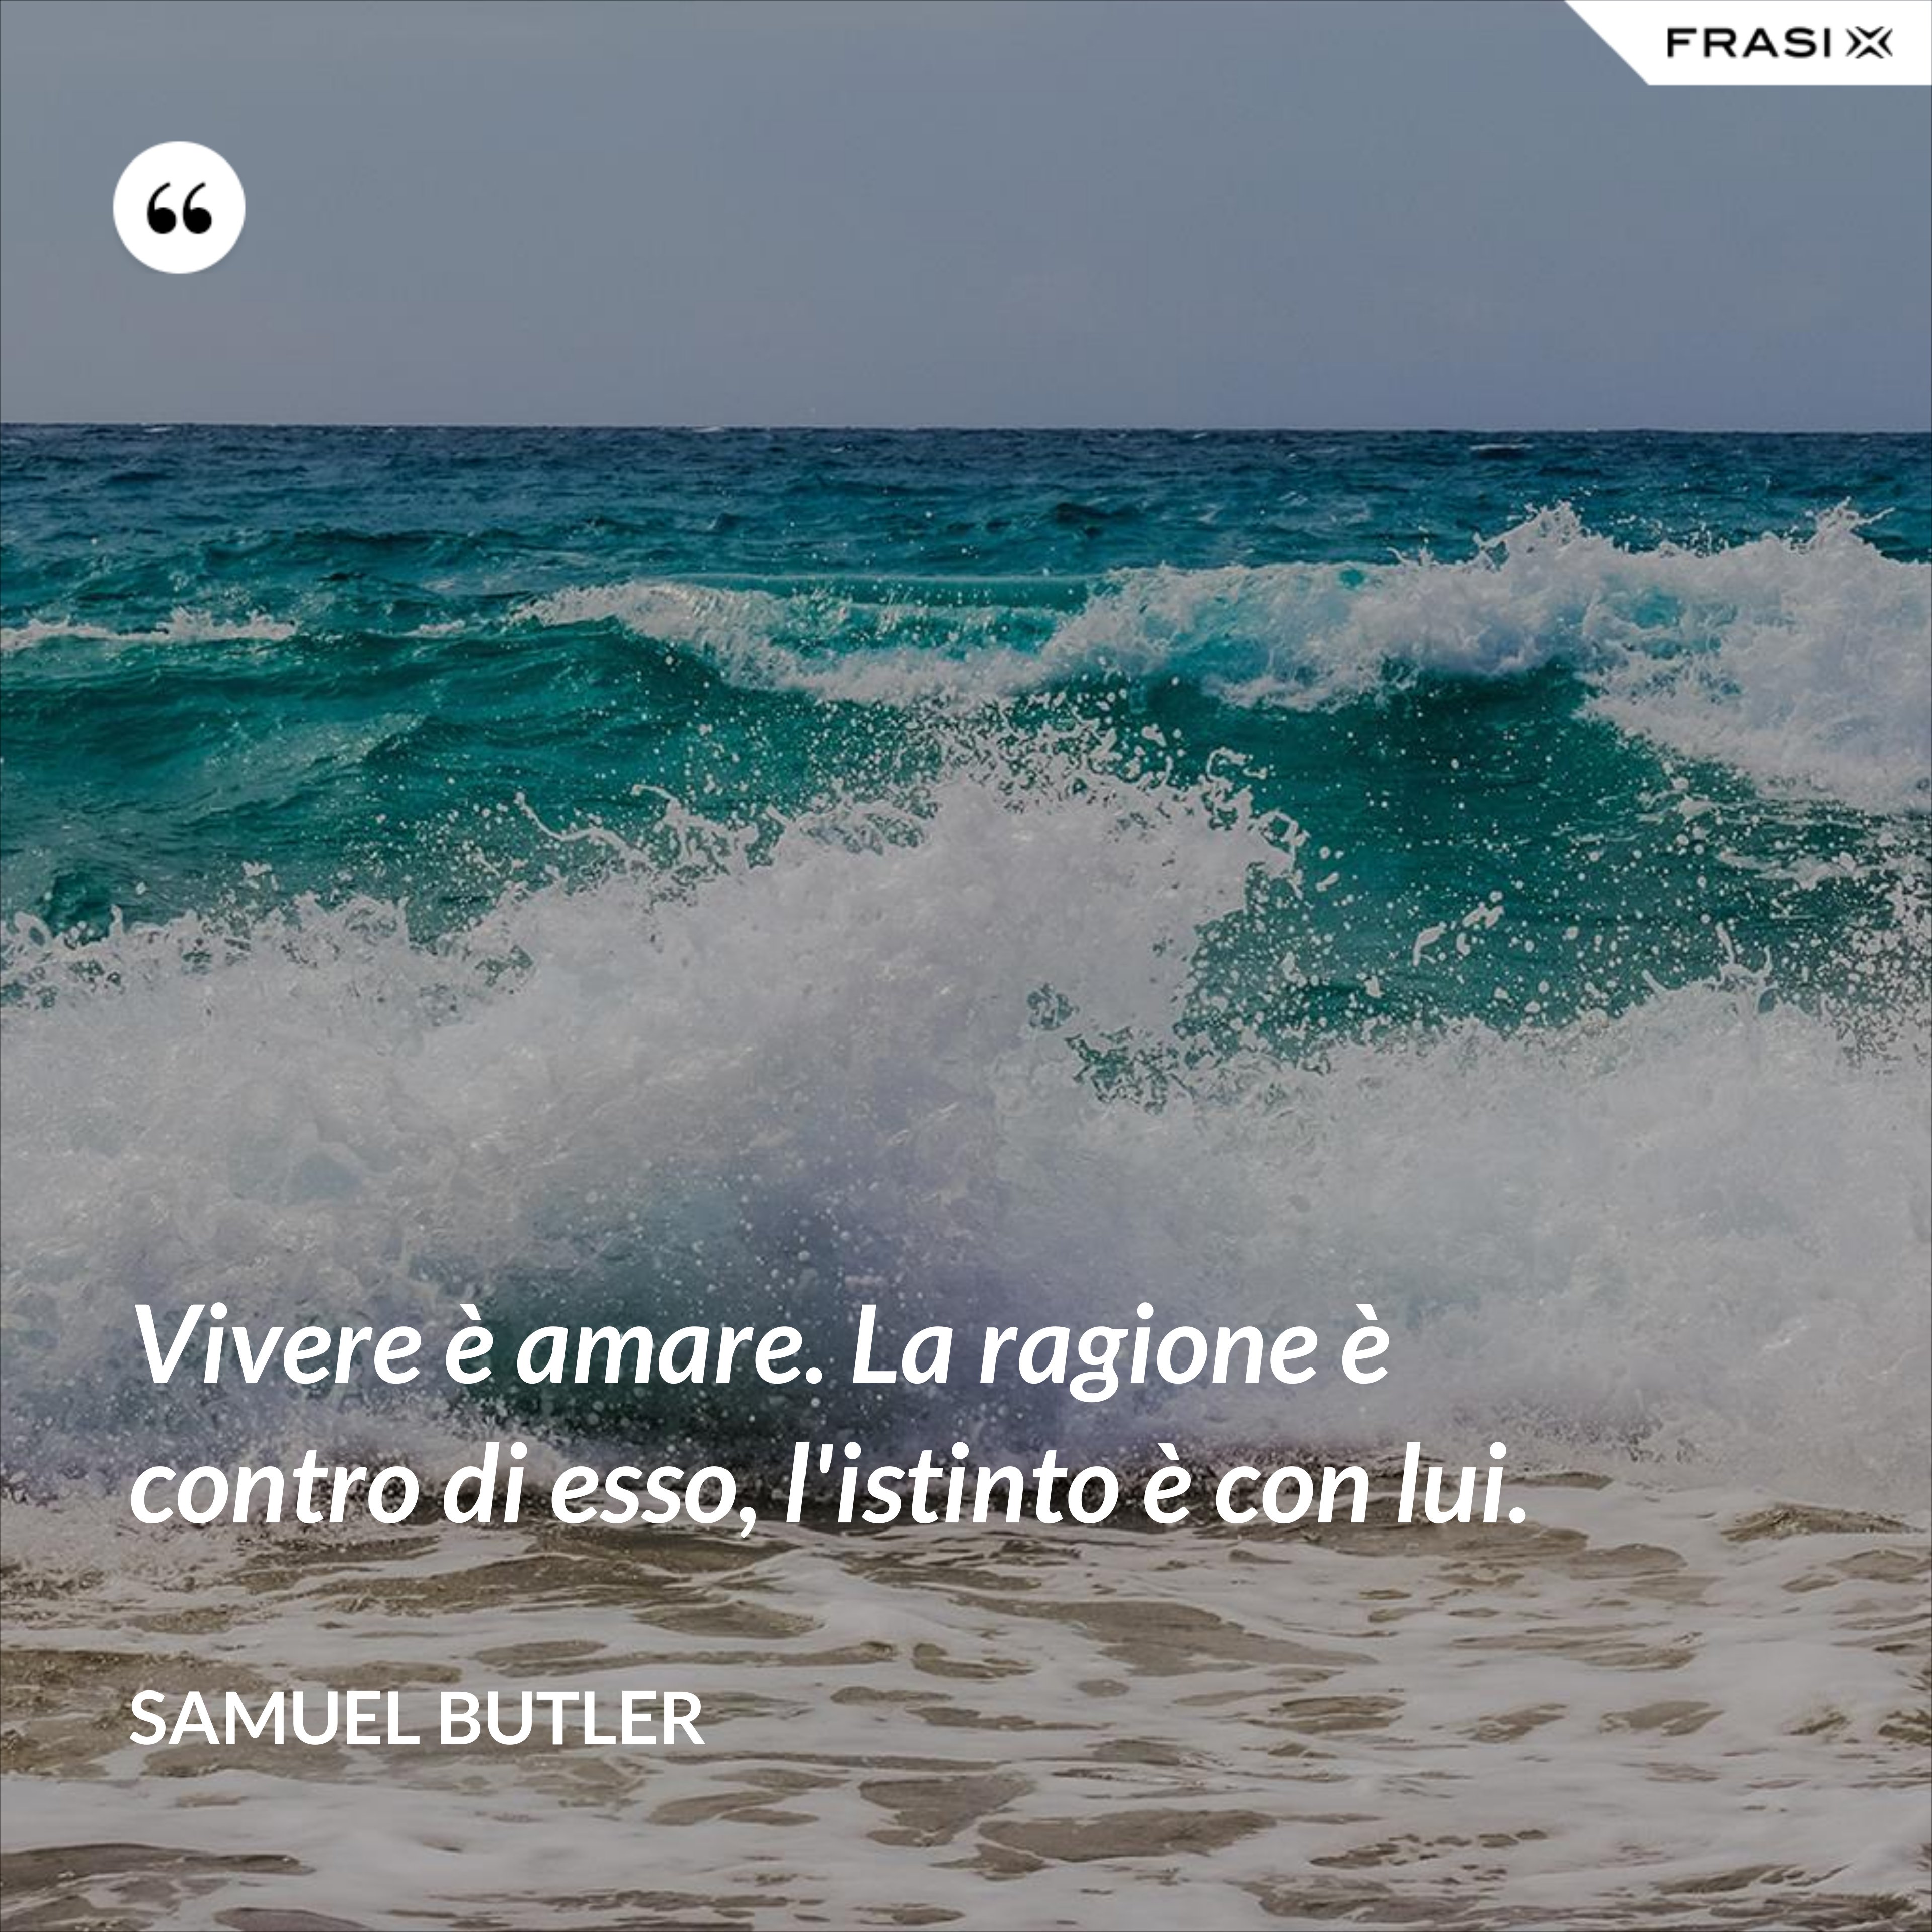 Vivere è amare. La ragione è contro di esso, l'istinto è con lui. - Samuel Butler